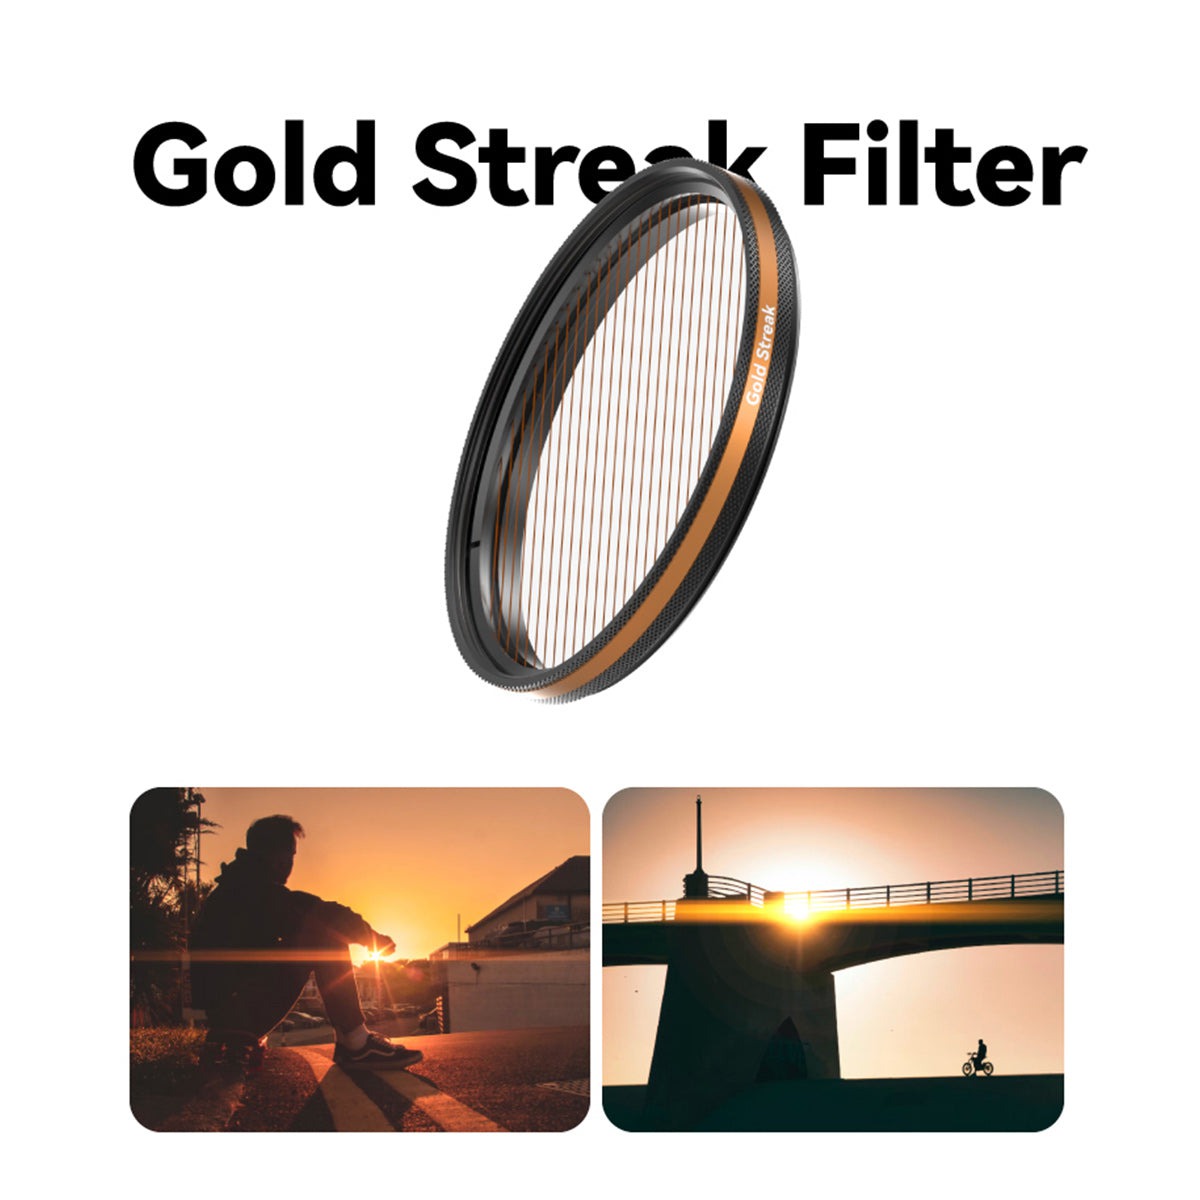 Fotorgear Gold Streak Filter